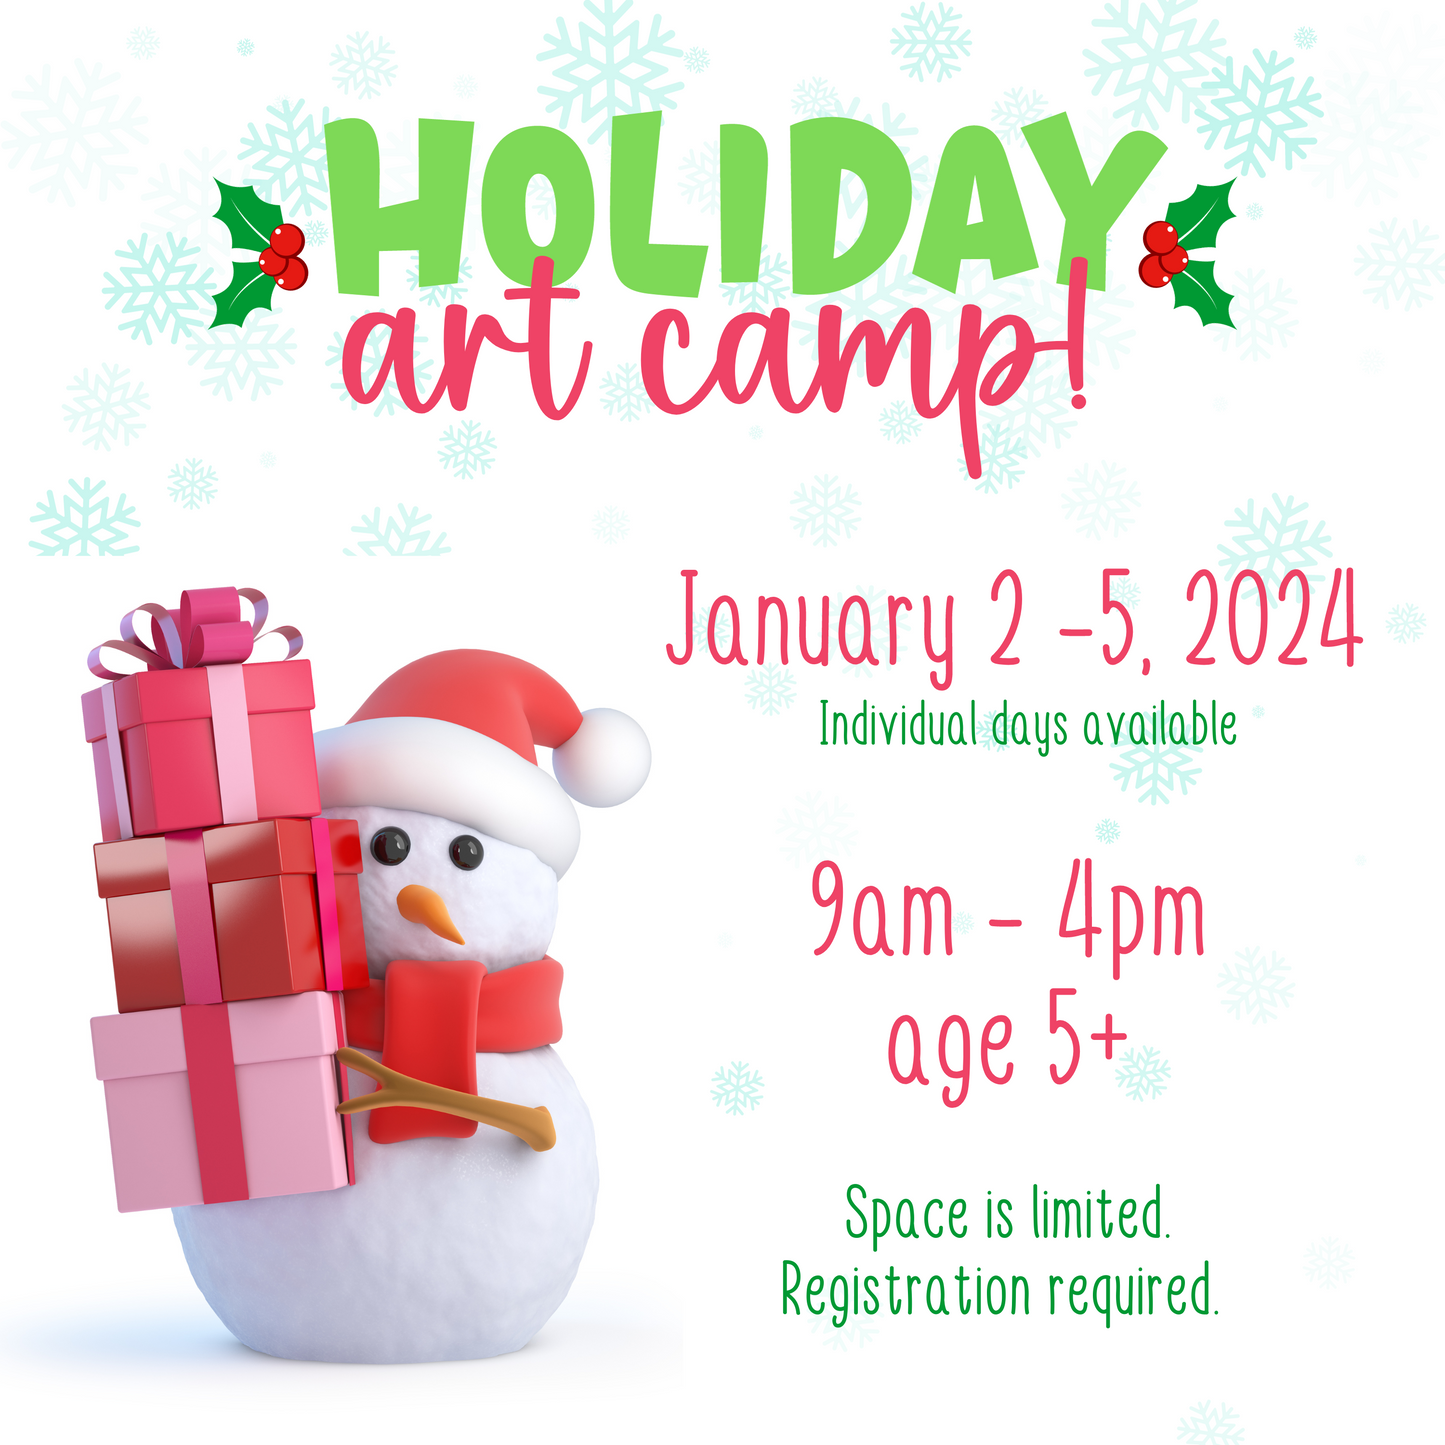 Holiday Art Camp - January 4, 2024